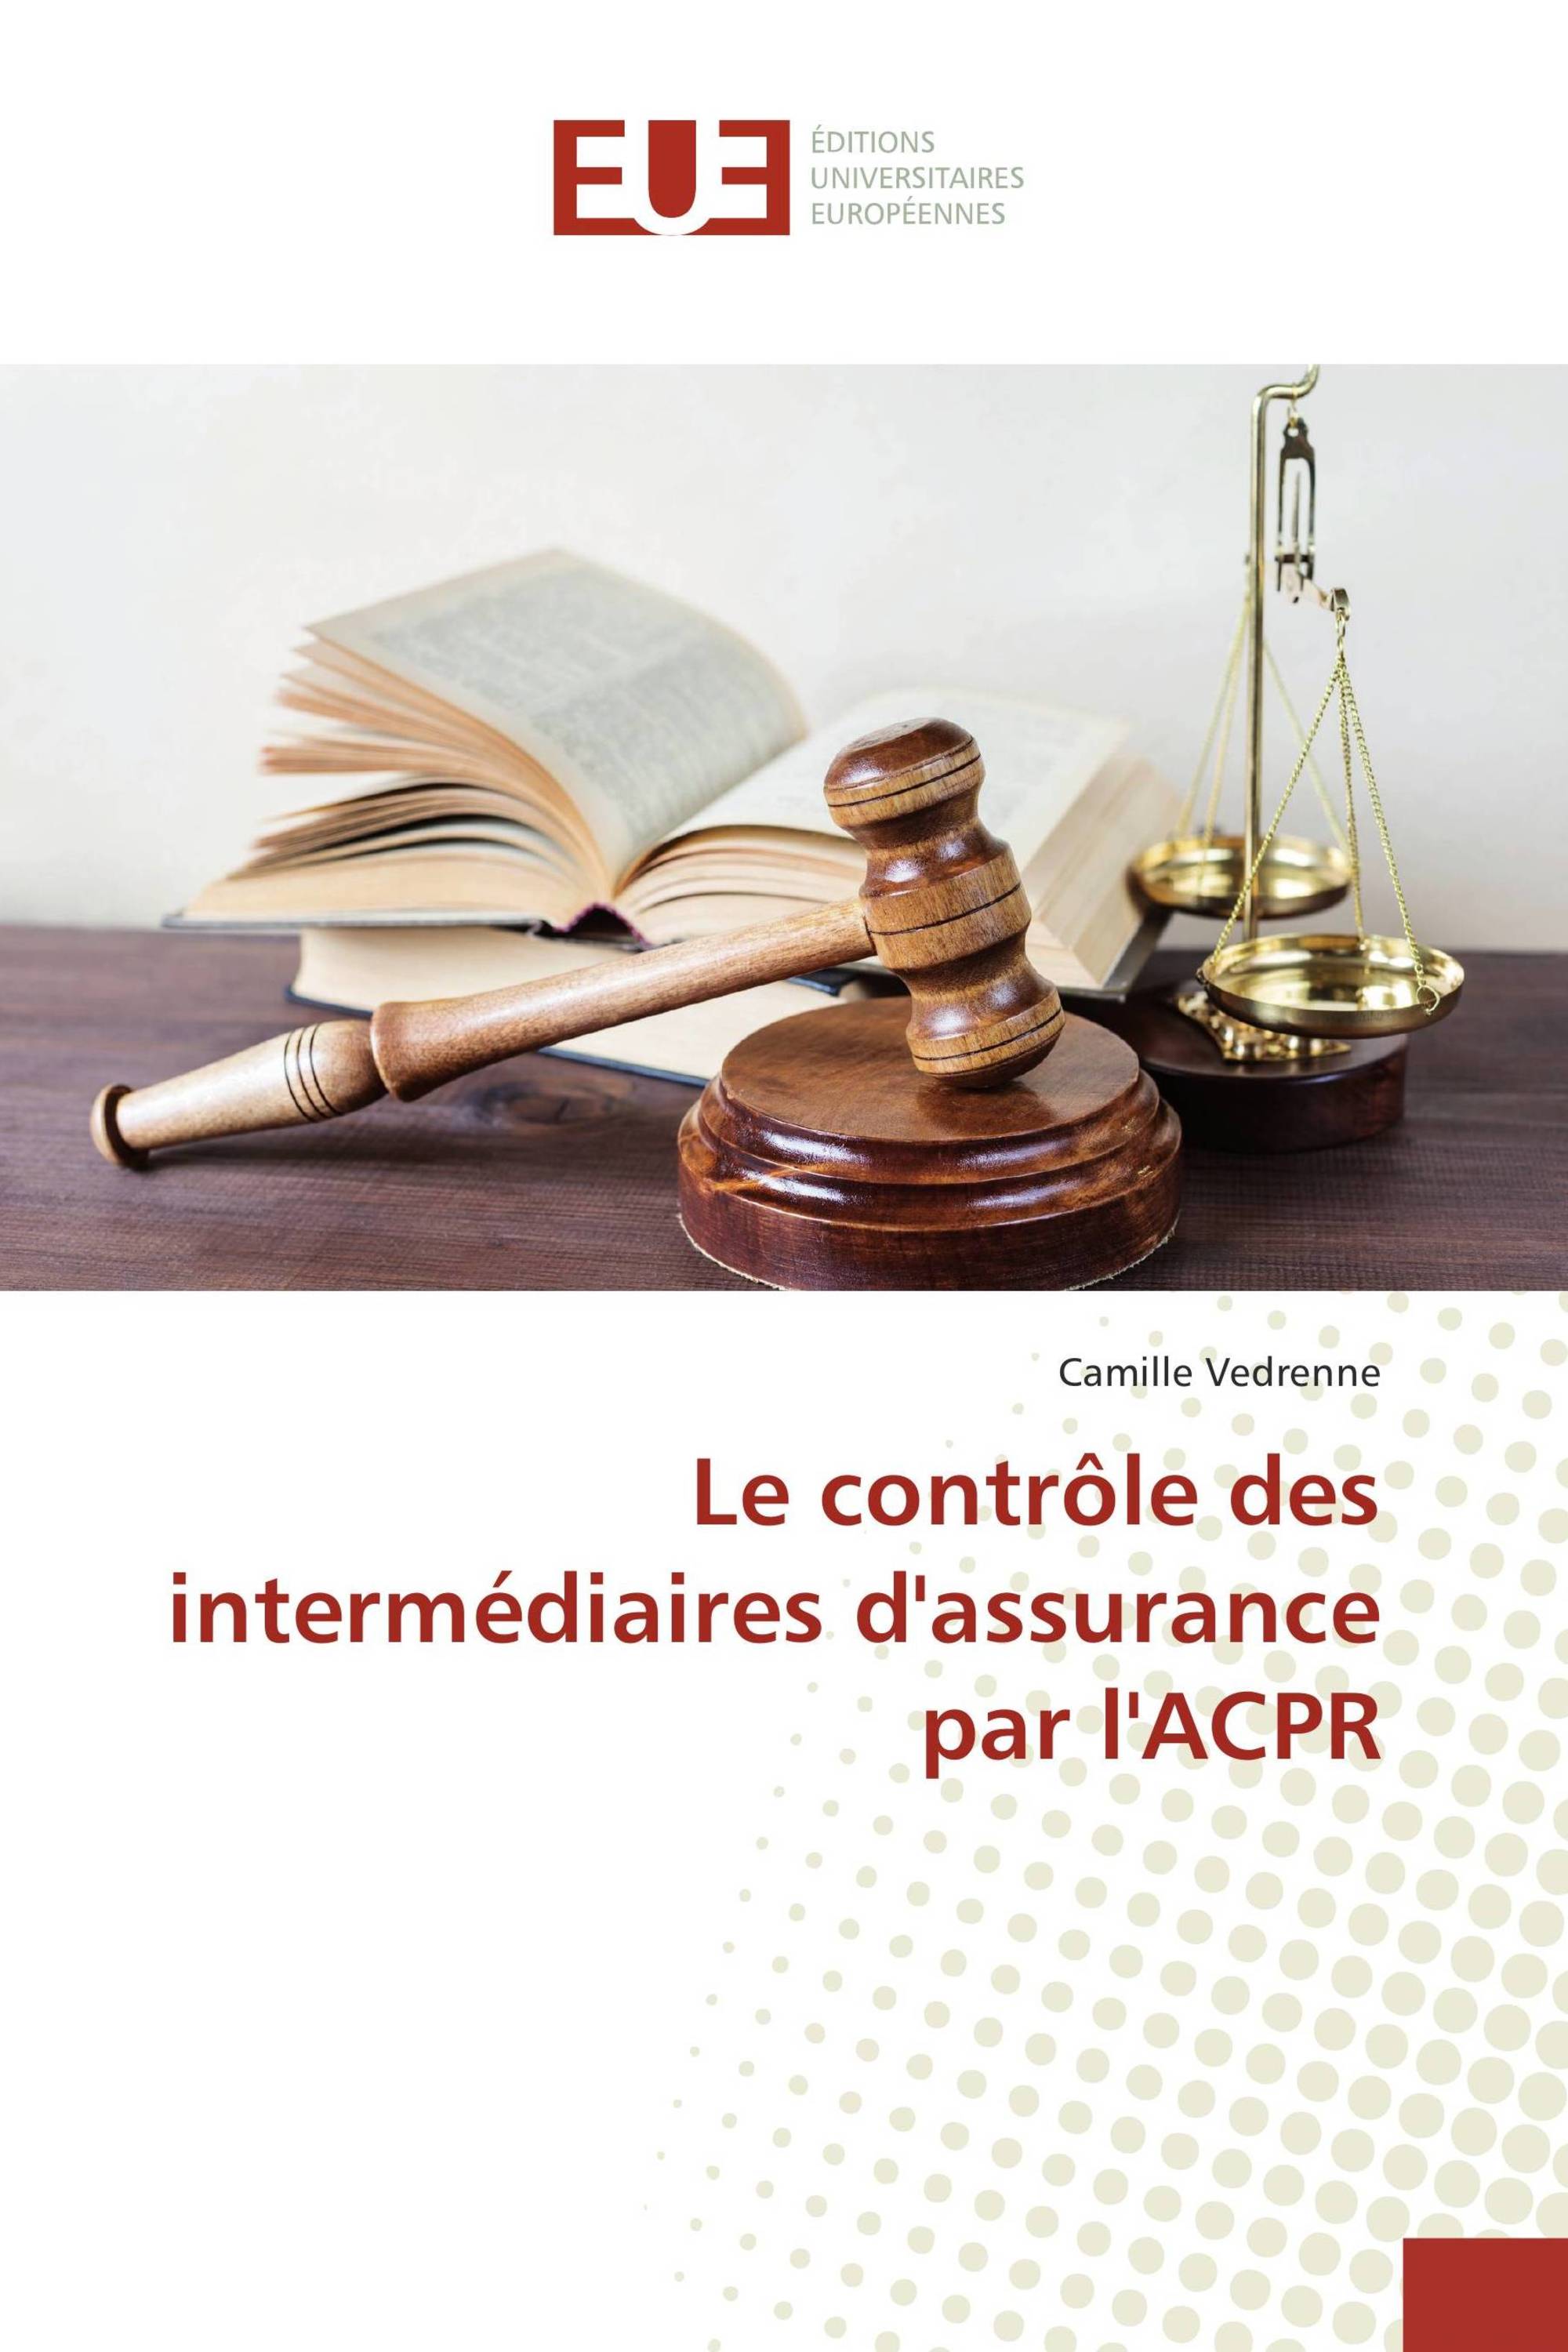 Le contrôle des intermédiaires d'assurance par l'ACPR